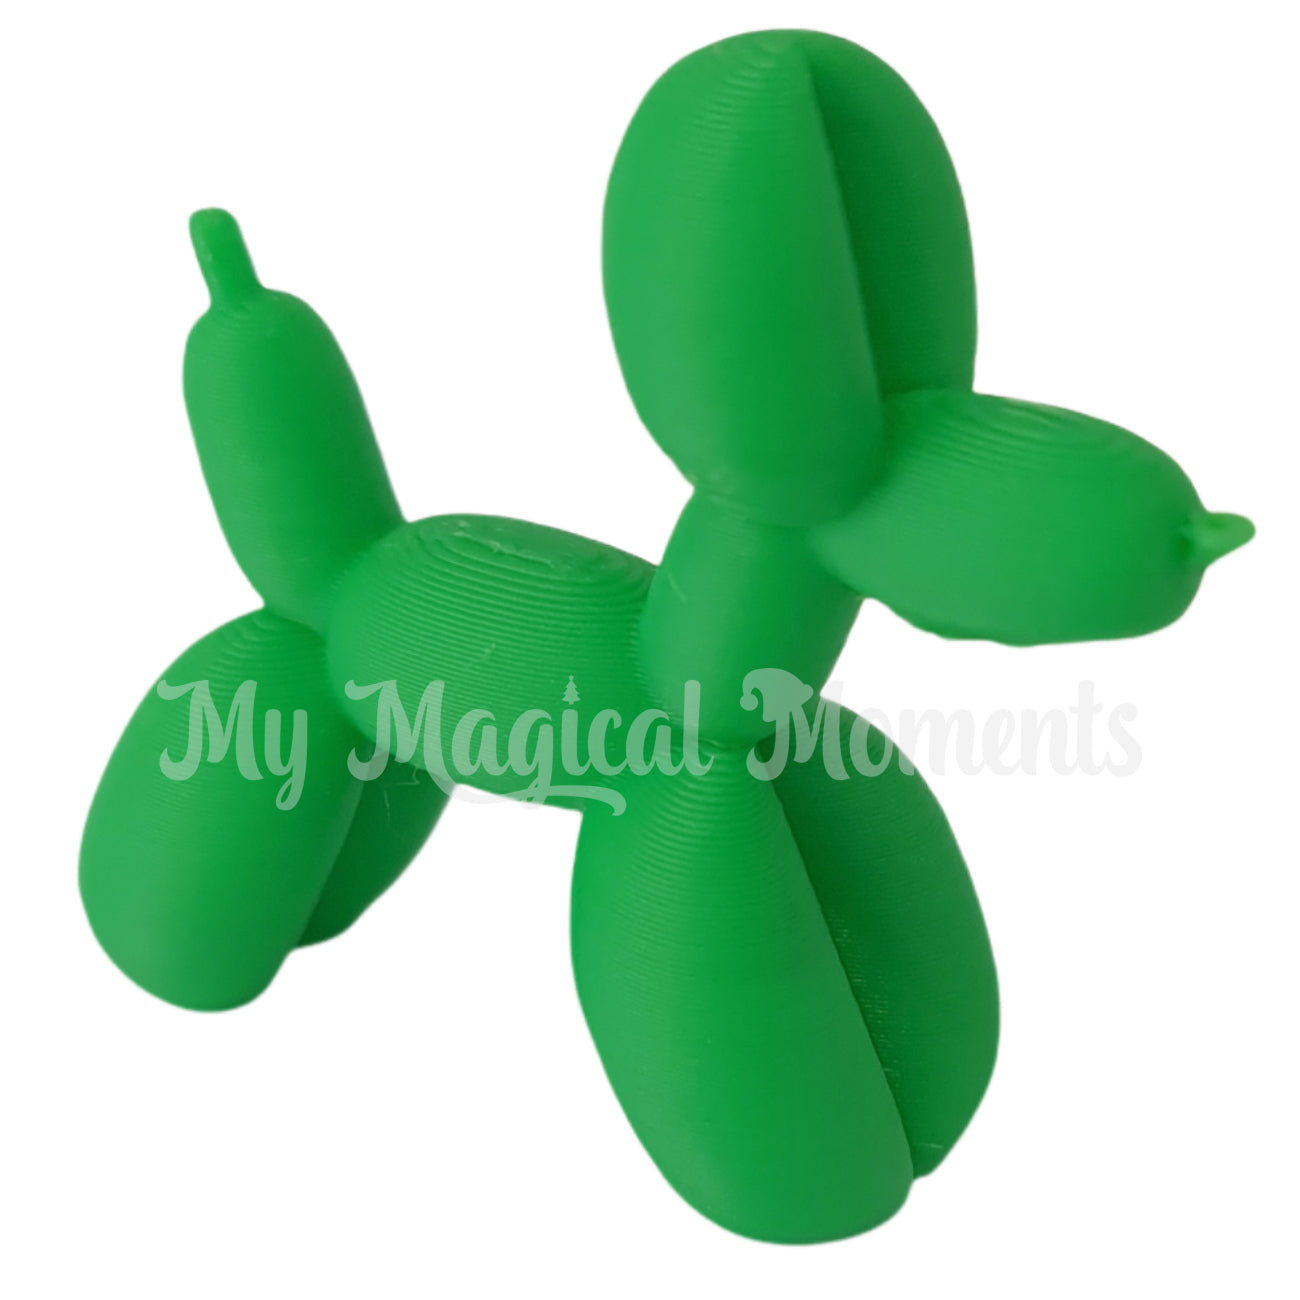 Miniature green balloon animal